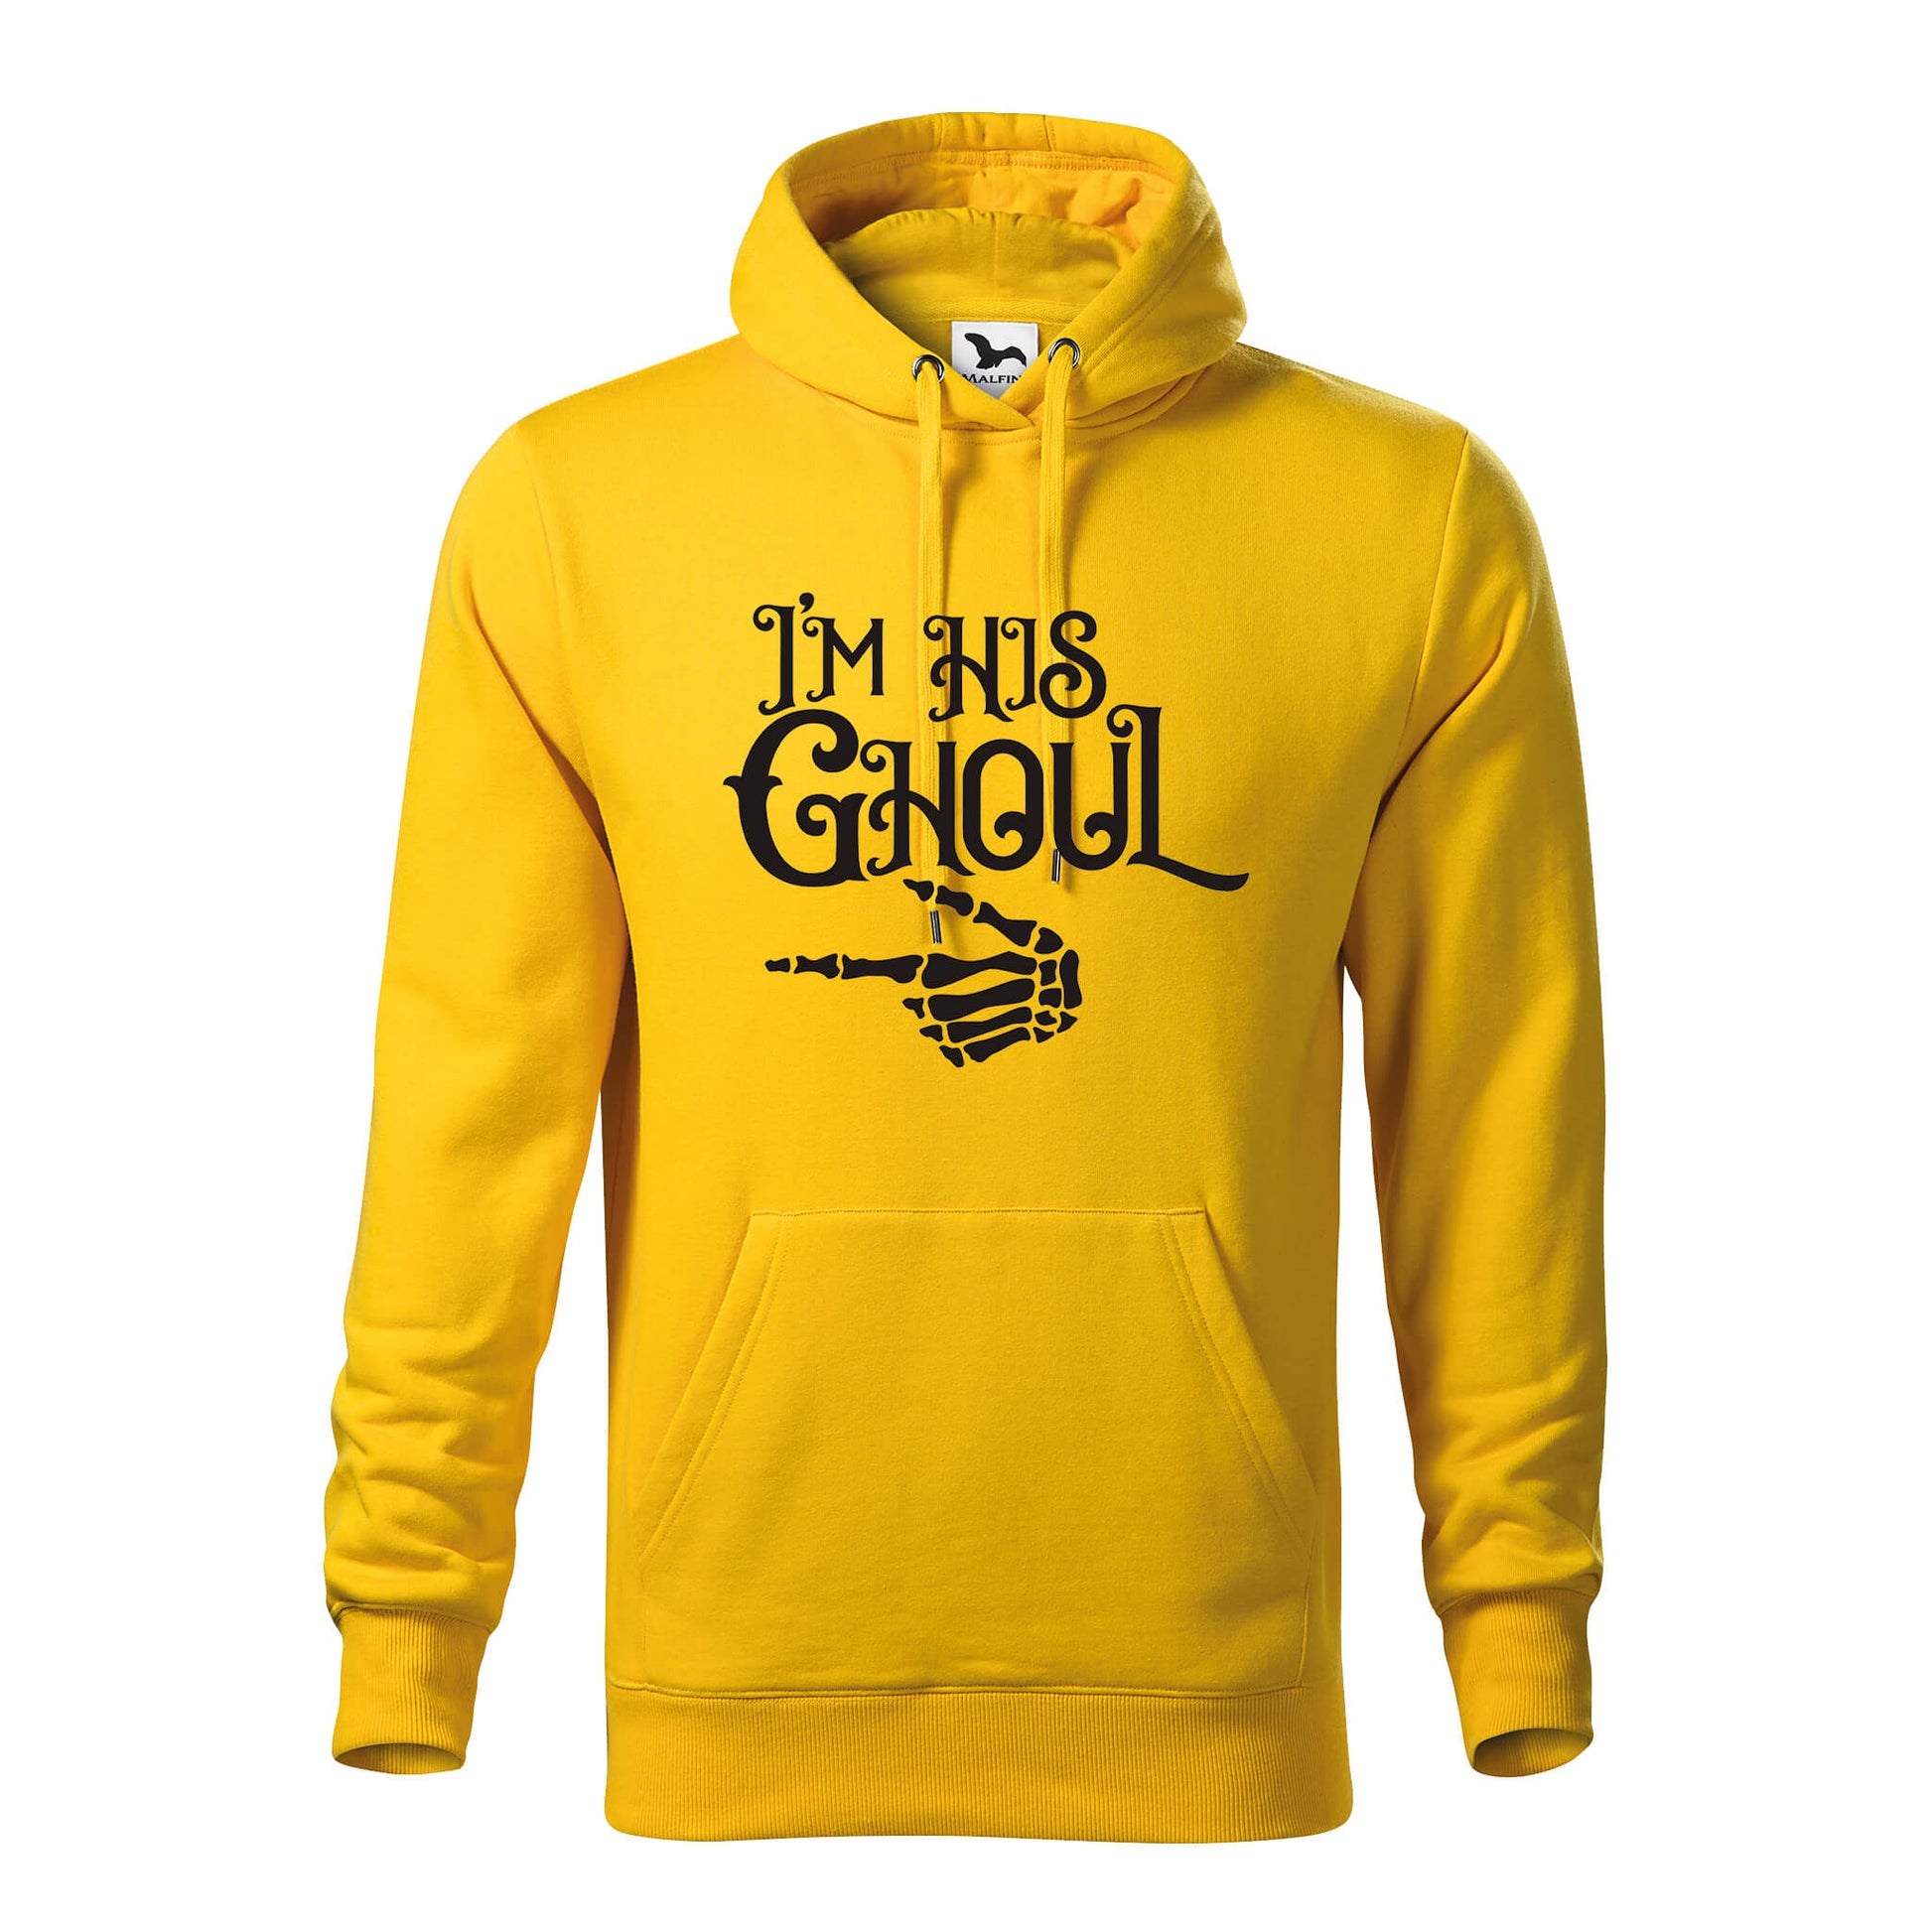 Im his ghoul hoodie - rvdesignprint